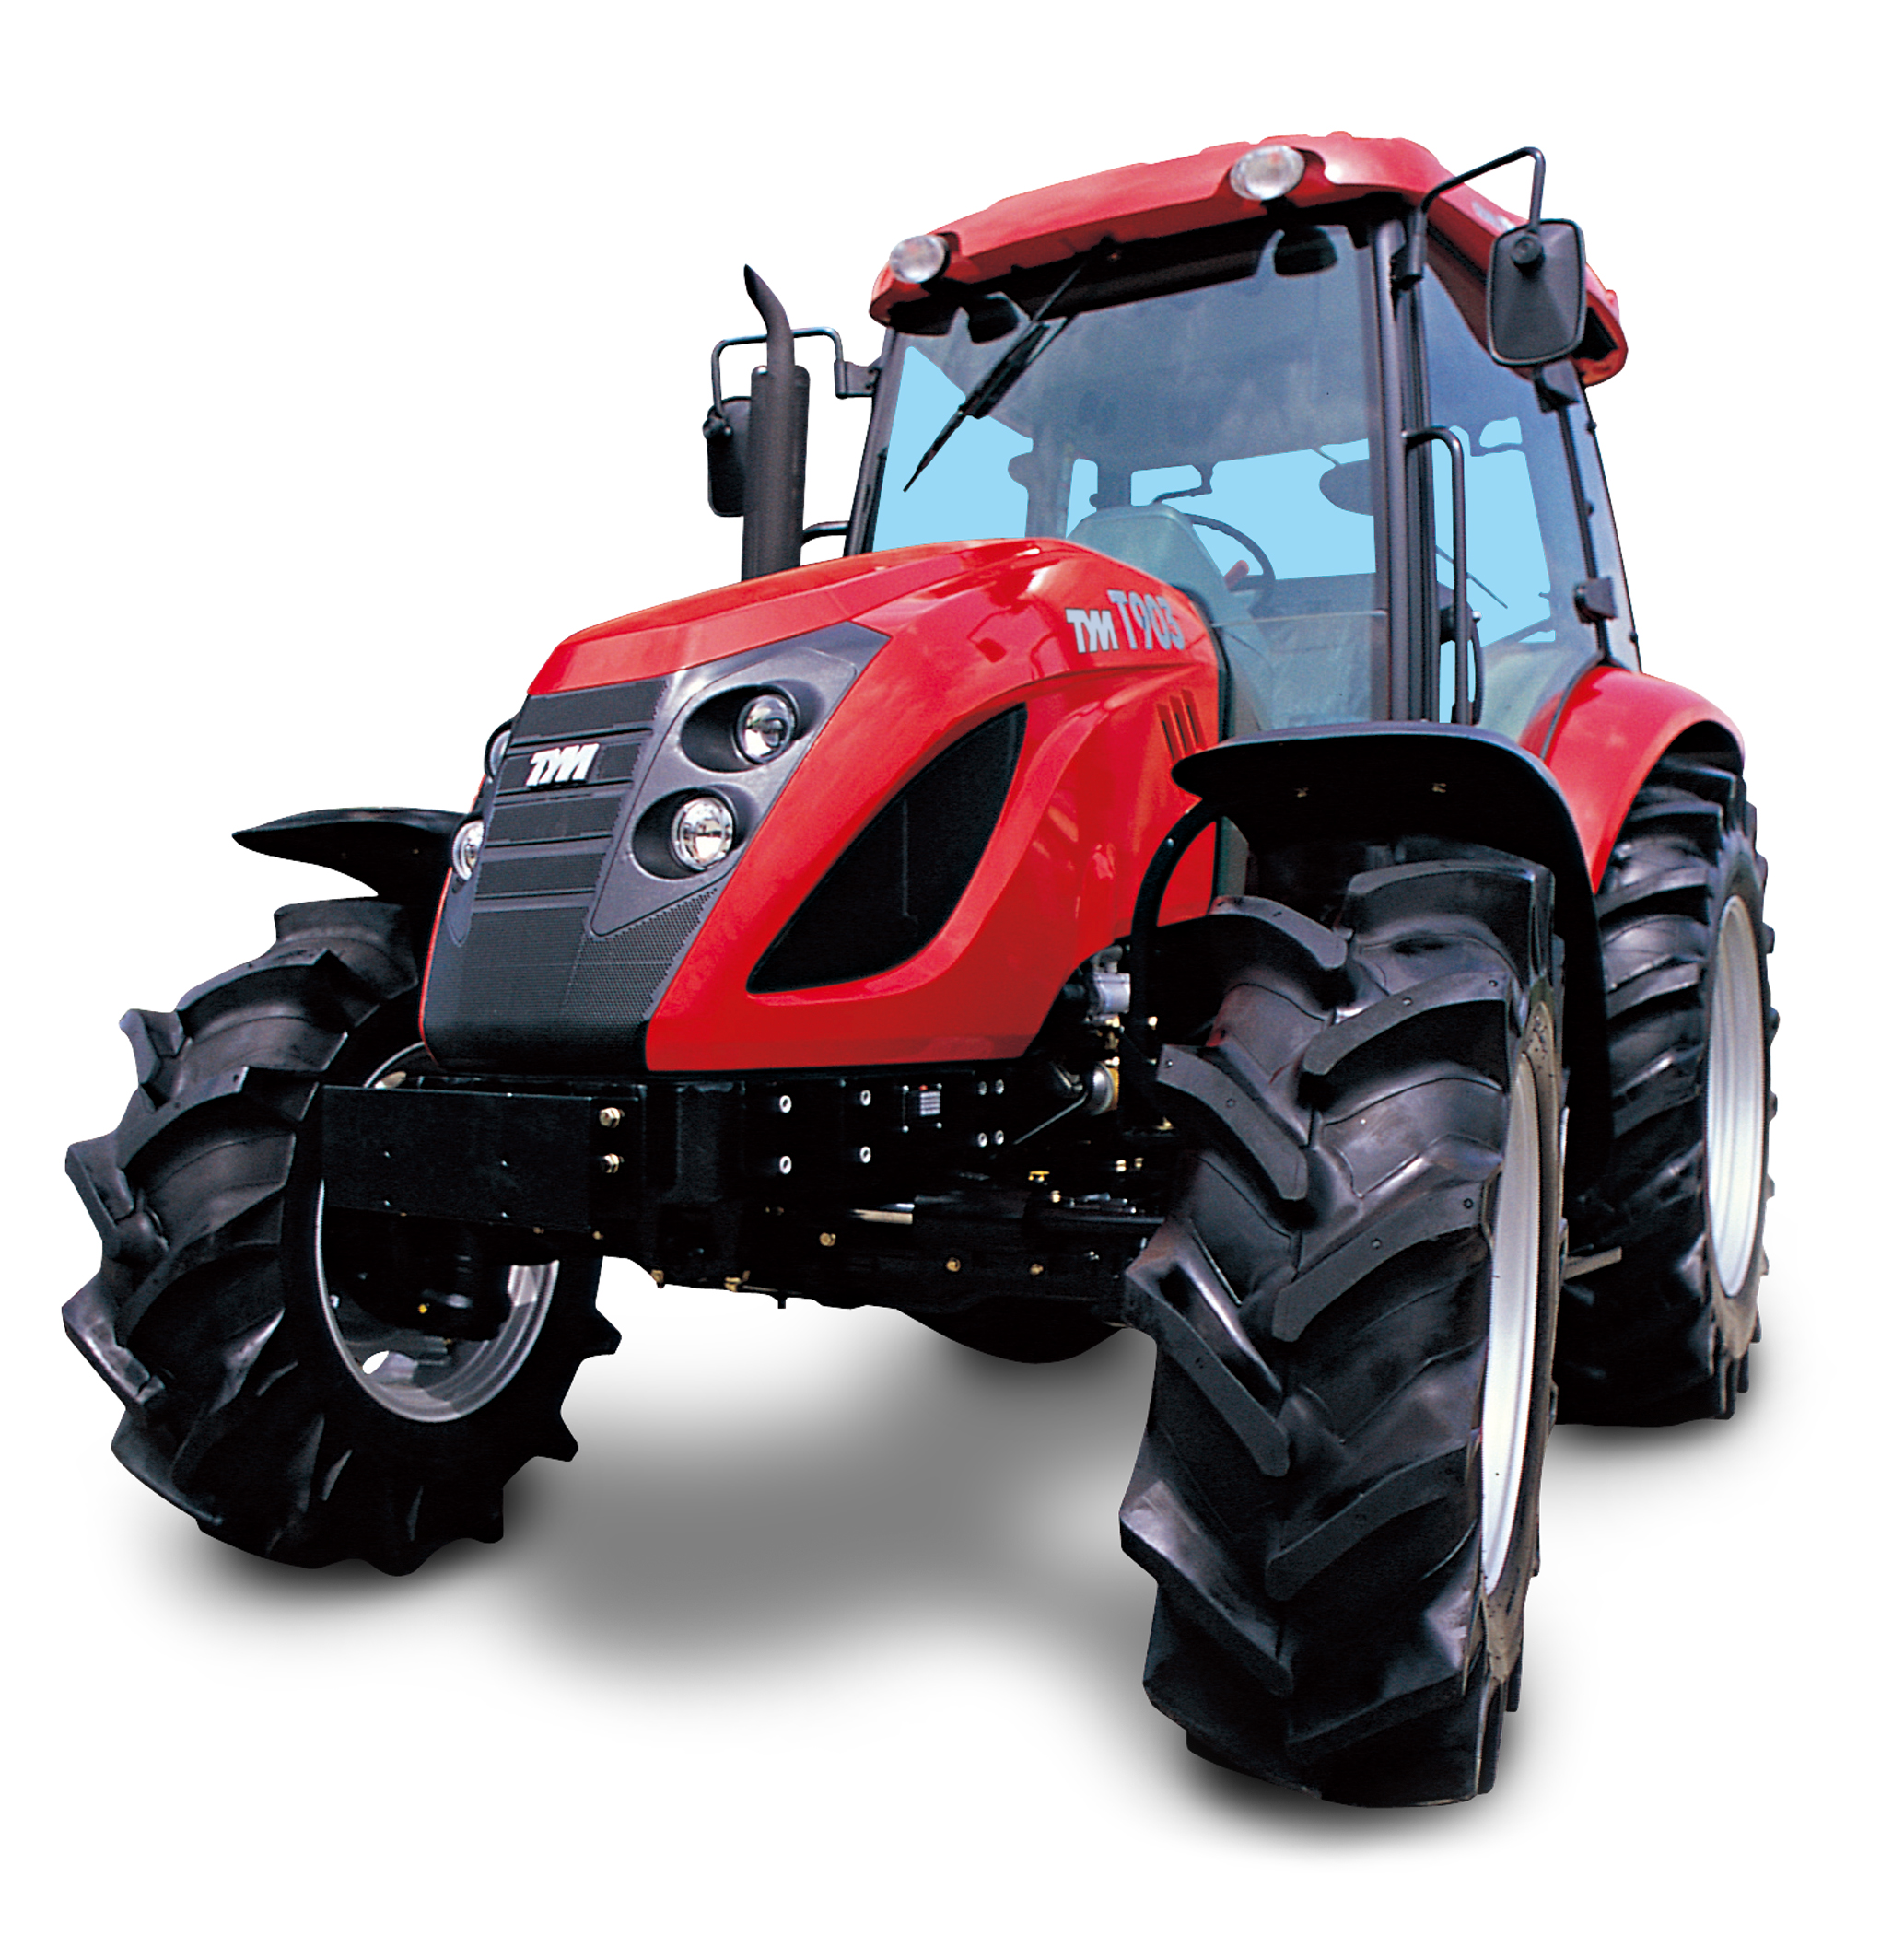 t433 tractor details t503 t503 tractor details t603 t603 tractor ...